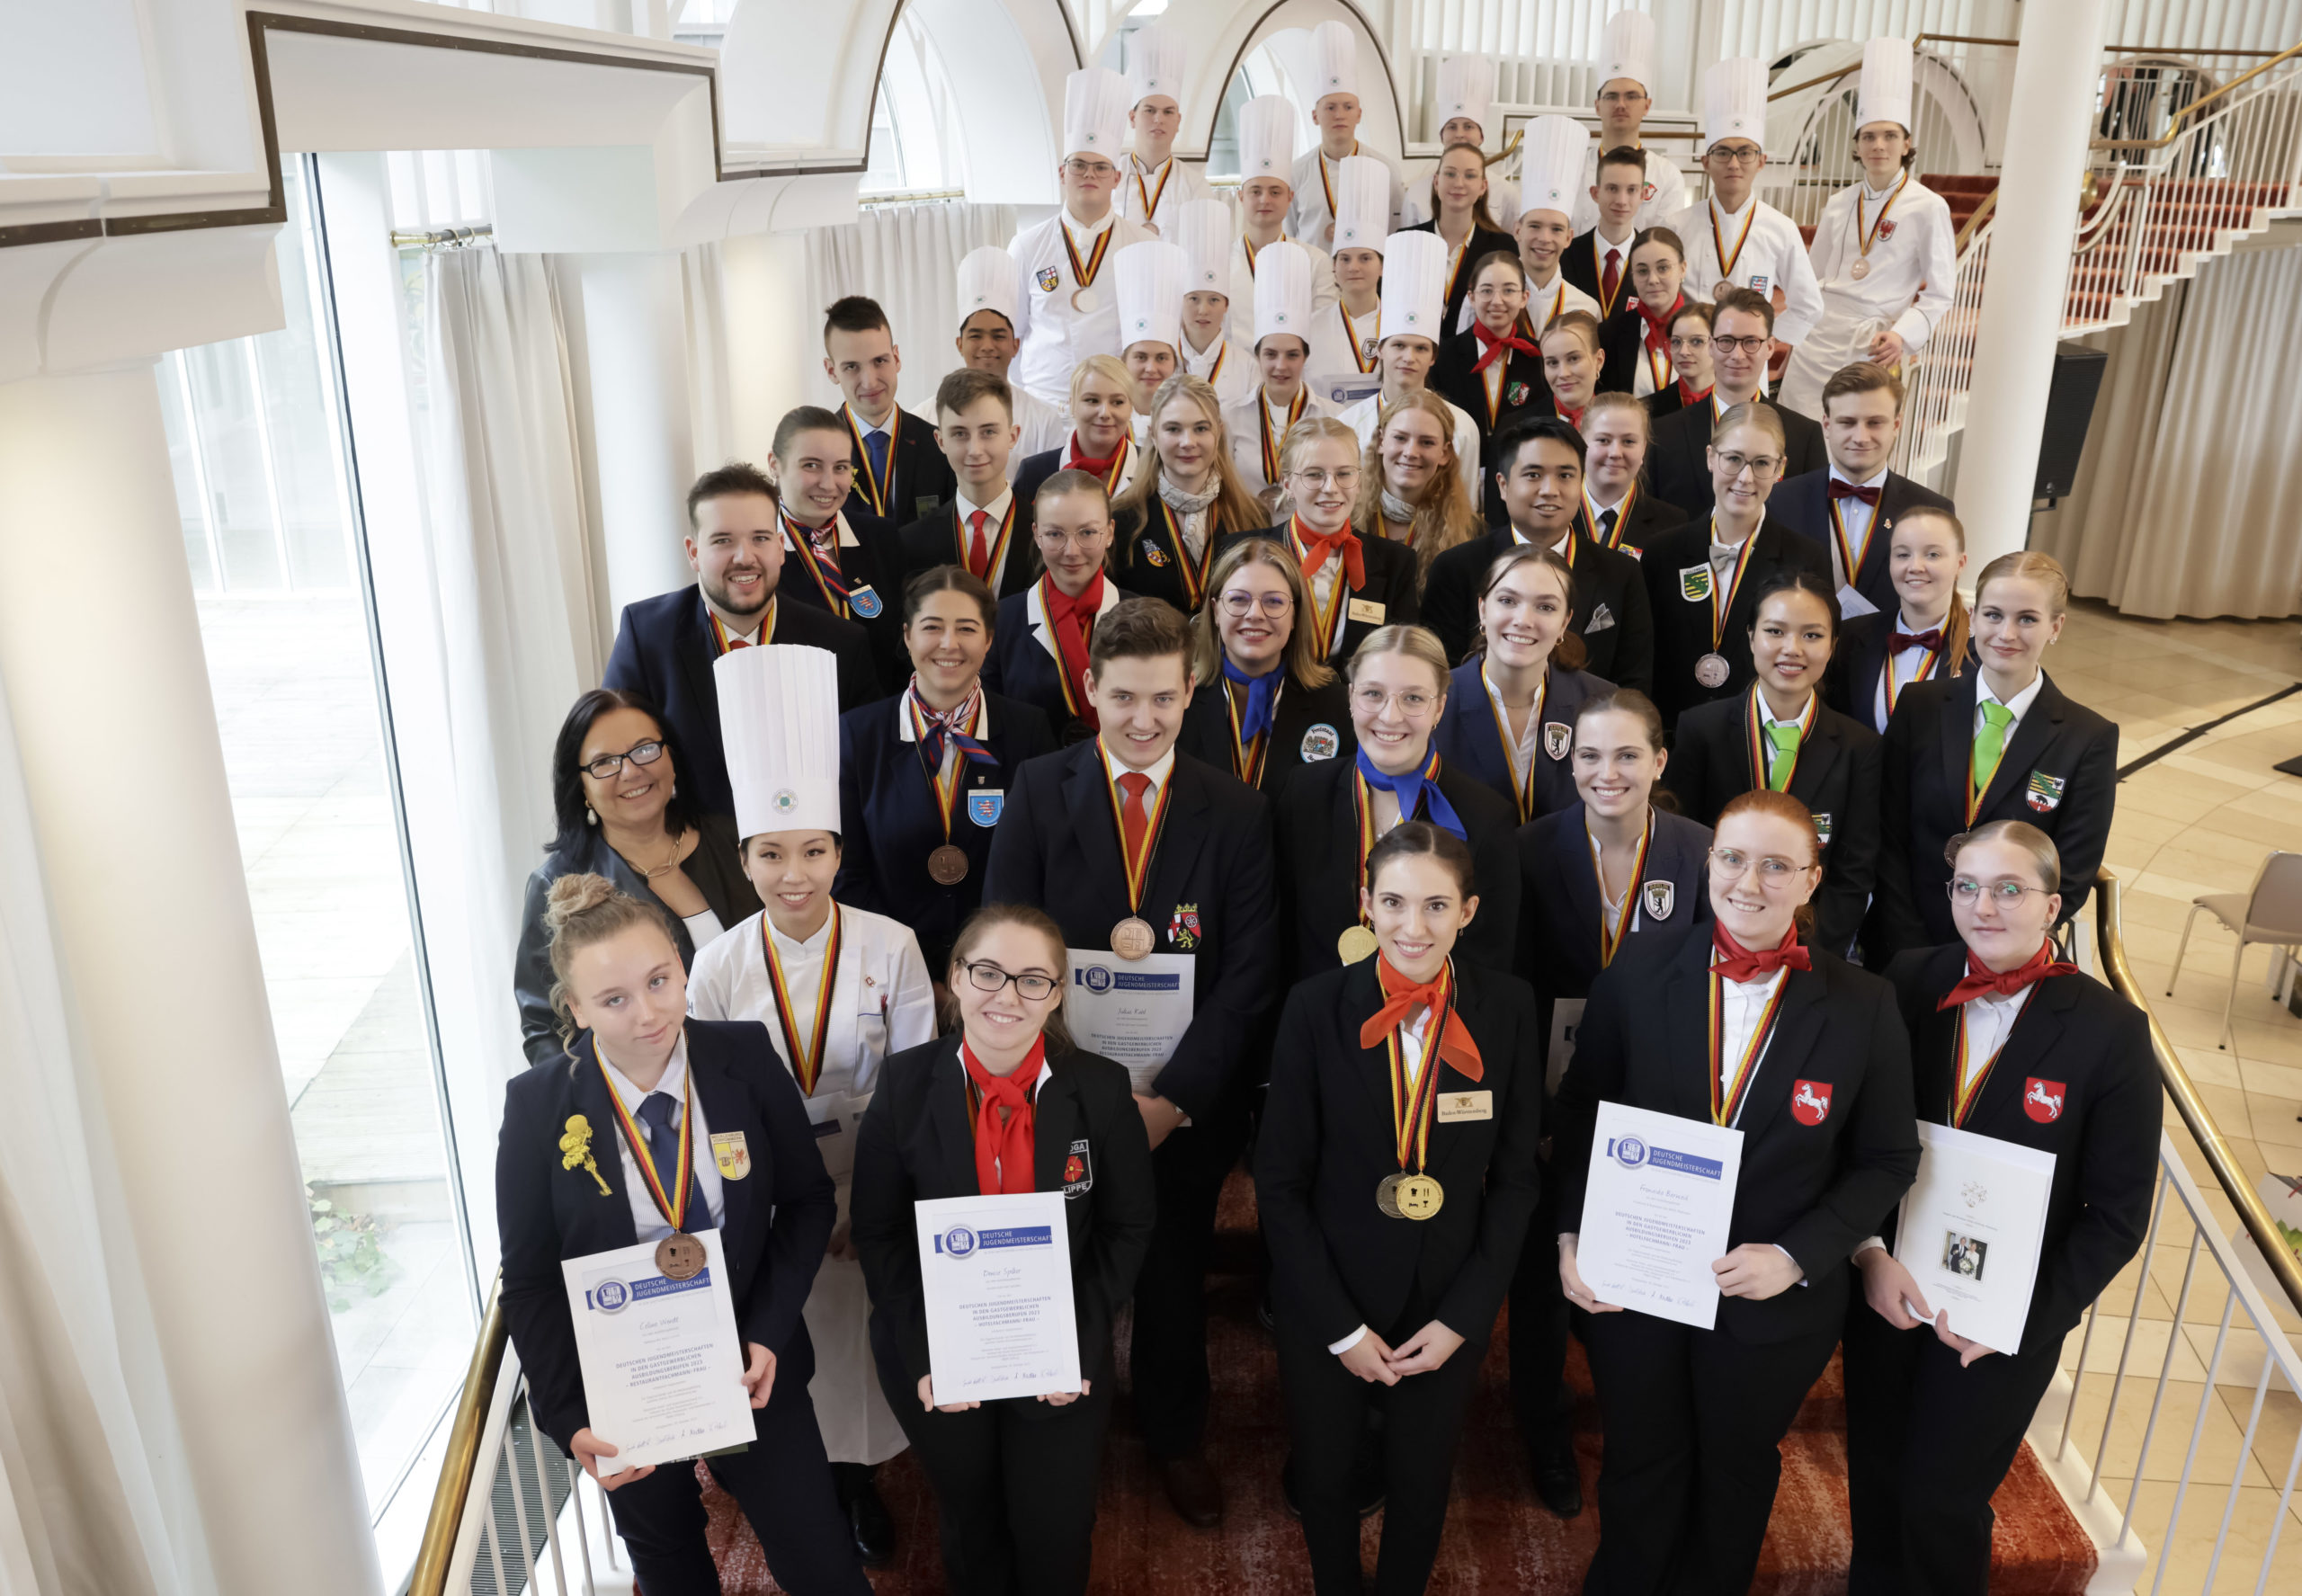 Gruppenbild der 51 Teilnehmenden der 41. Deutschen Jugendmeisterschaften In den Gastgewerblichen Ausbildungsberufen Foto: Dehoga/Thomas Fedra